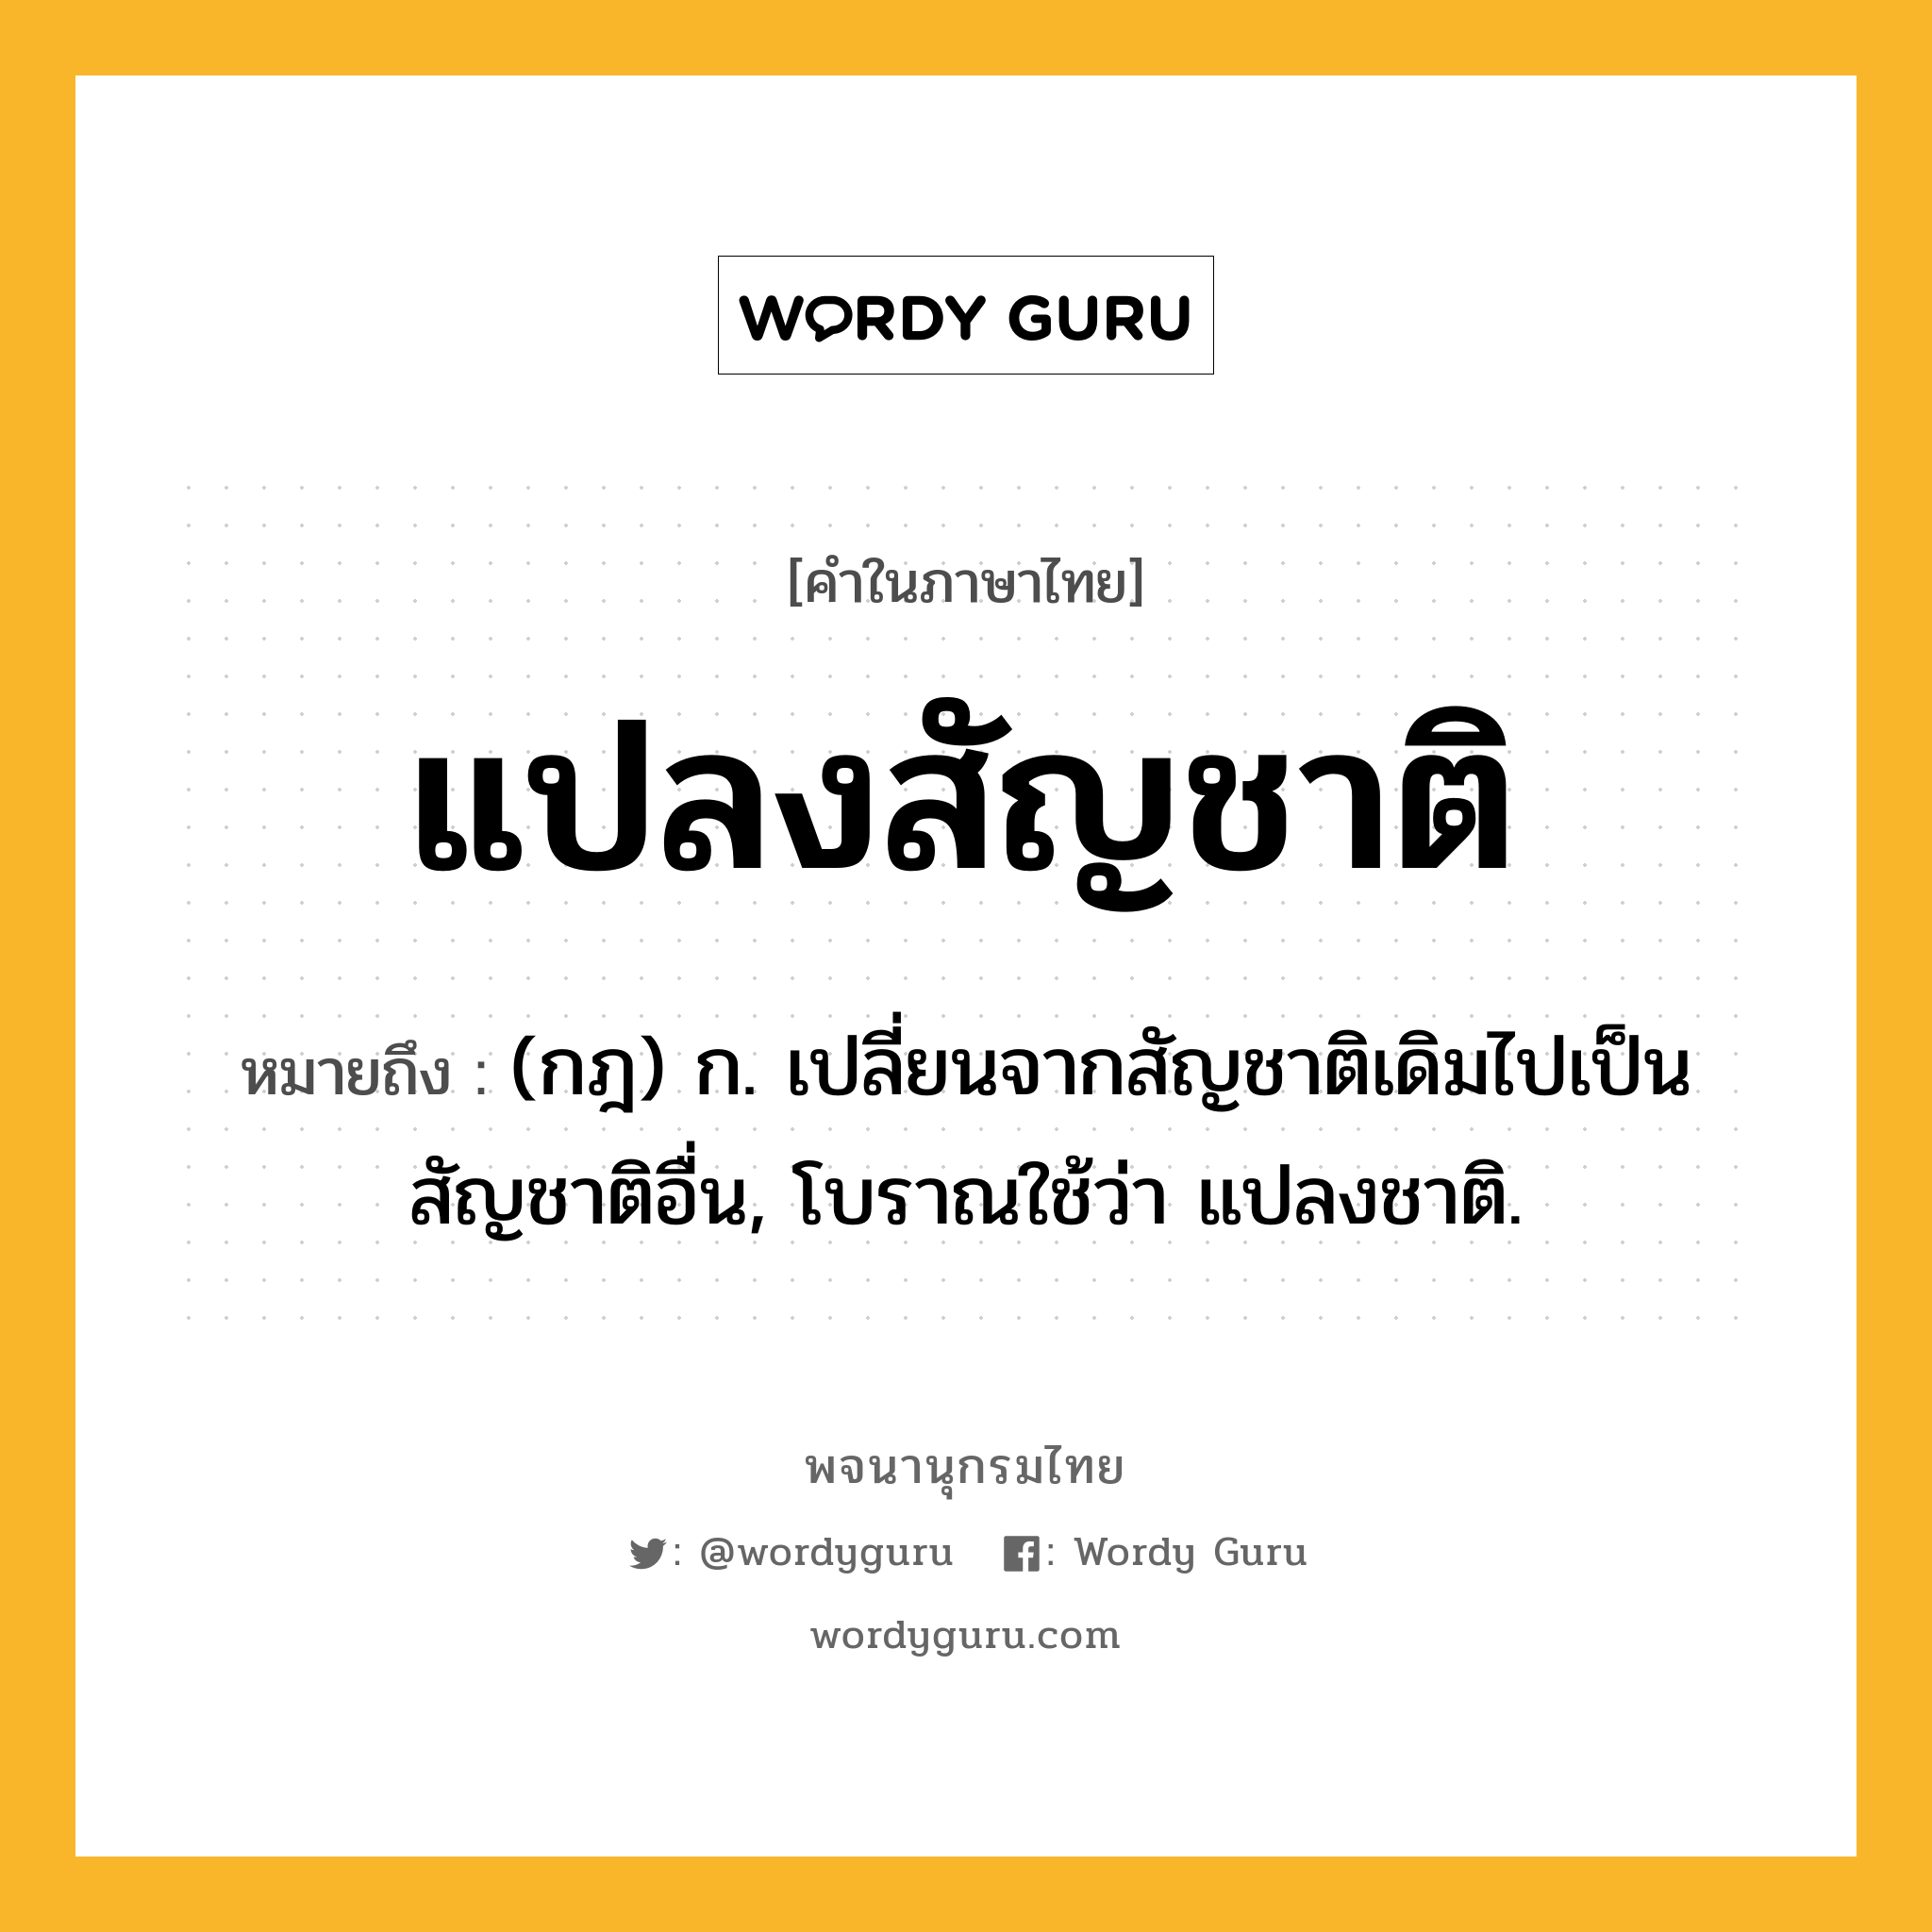 แปลงสัญชาติ หมายถึงอะไร?, คำในภาษาไทย แปลงสัญชาติ หมายถึง (กฎ) ก. เปลี่ยนจากสัญชาติเดิมไปเป็นสัญชาติอื่น, โบราณใช้ว่า แปลงชาติ.